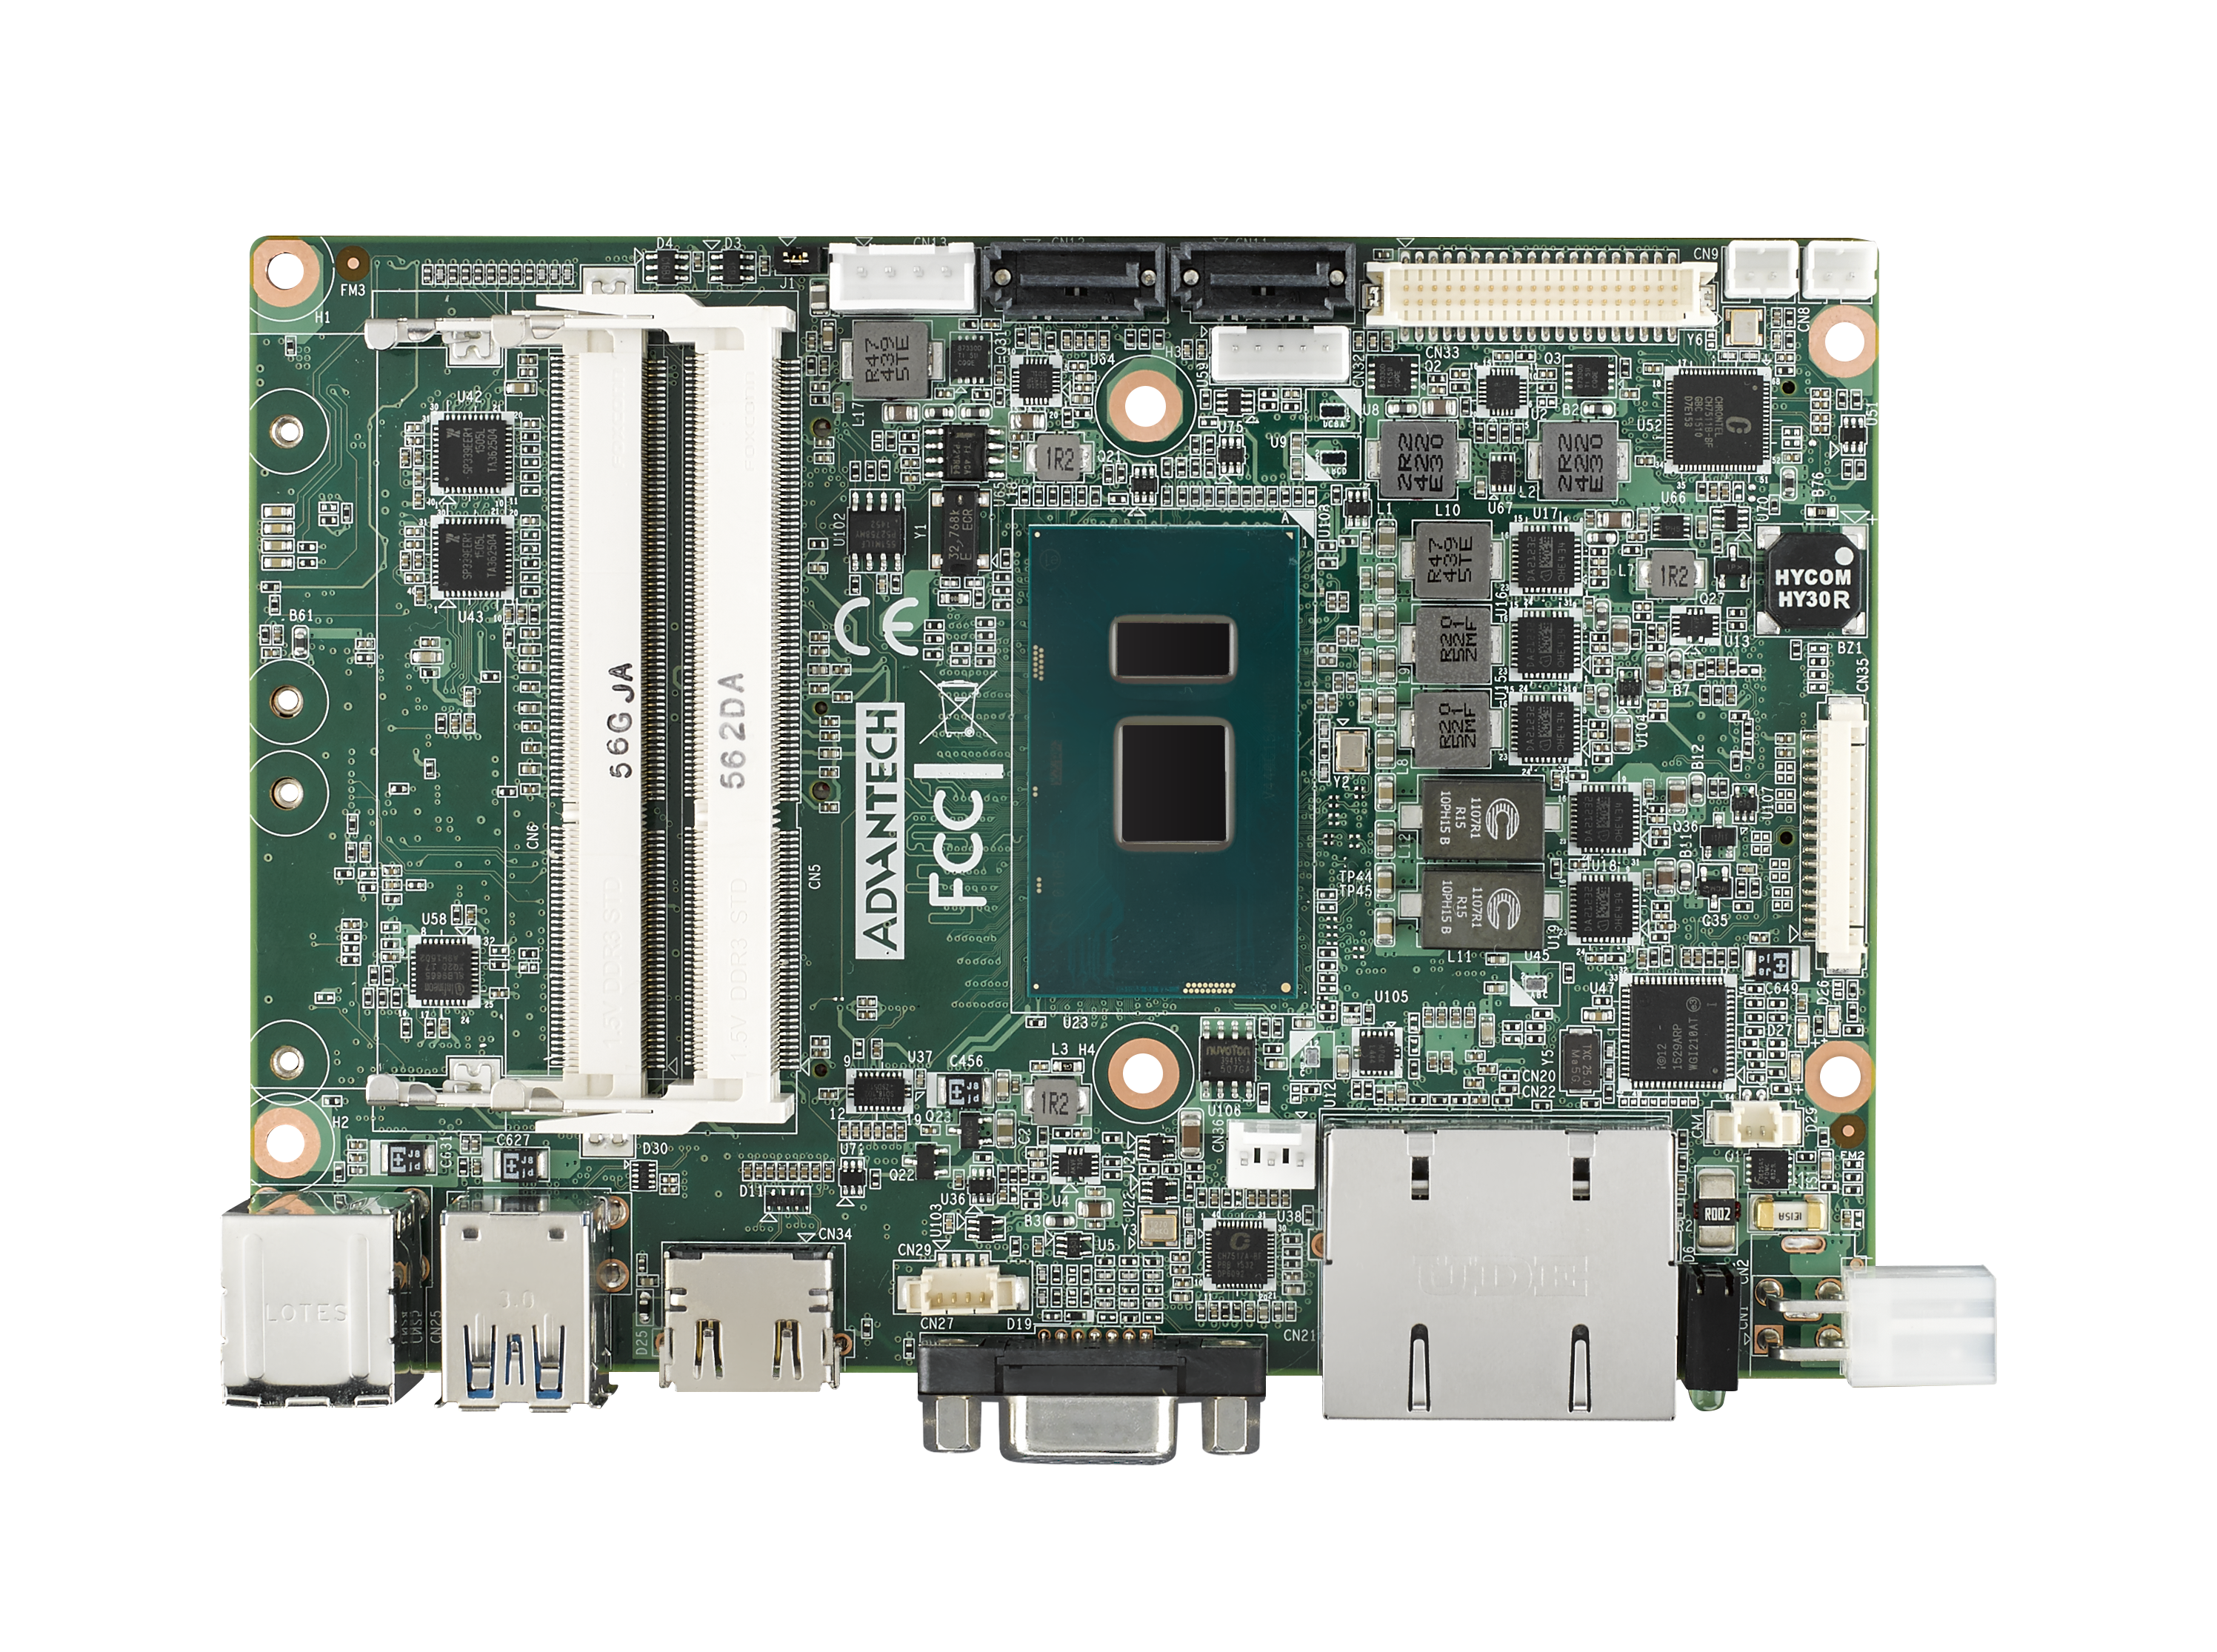 6th Gen i5 6300U 3.5” Compact SBC with DDR3L, VGA, HDMI, 48-bit LVDS, 2 GbE, 
2 Mini PCIe, mSATA, Fanless, MIOe